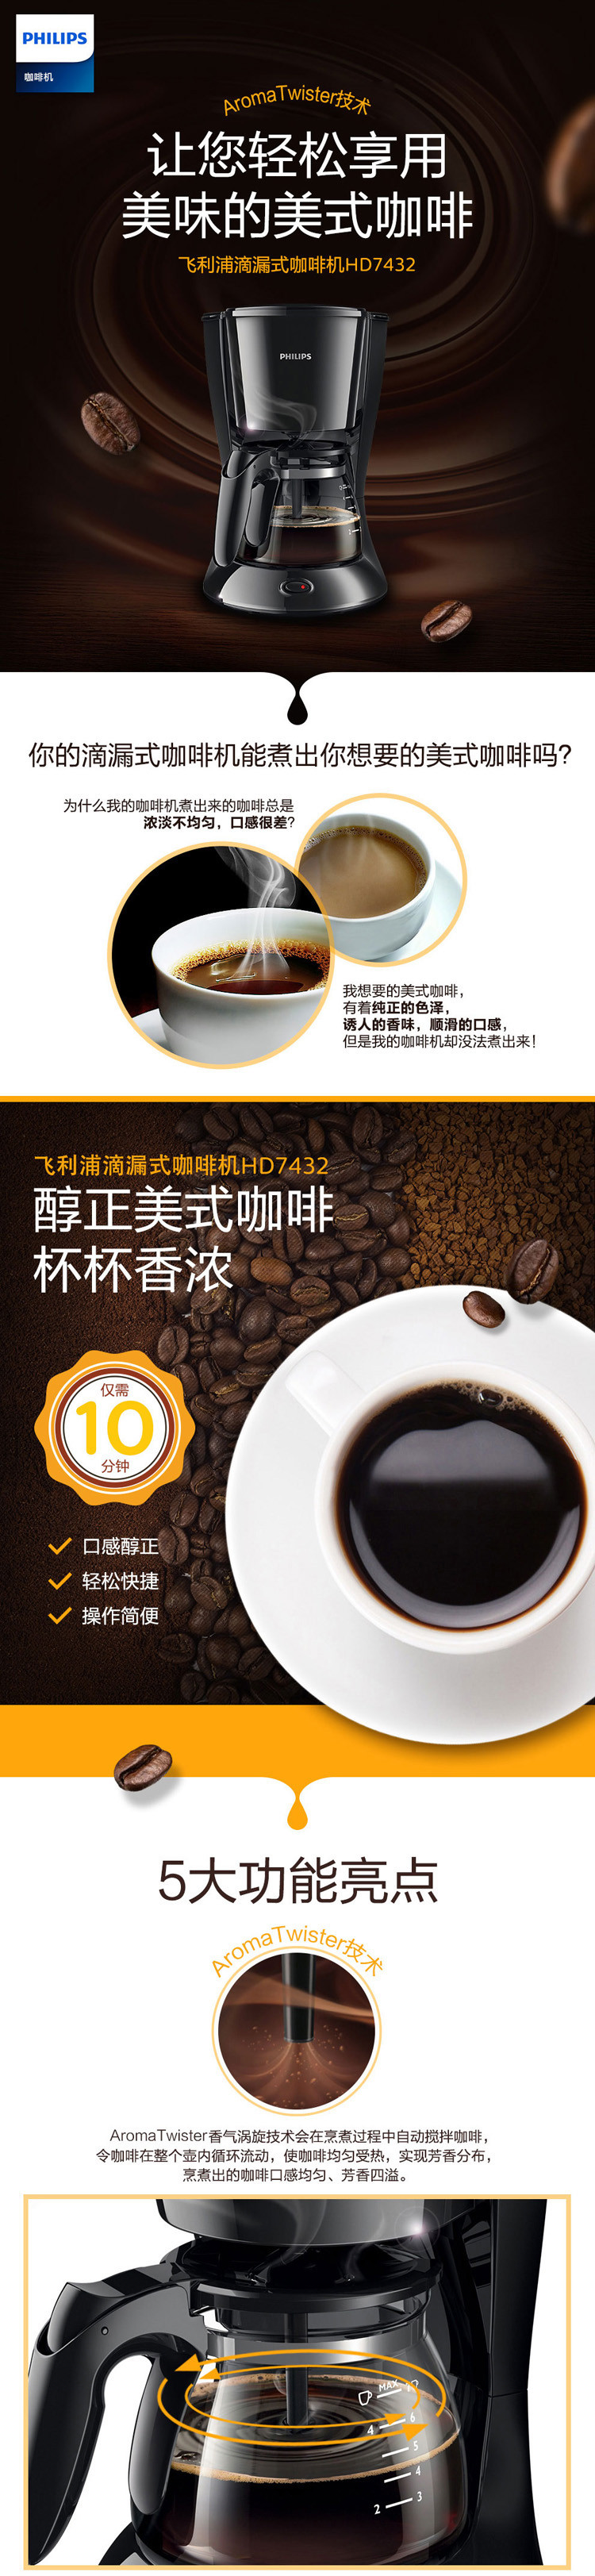 飞利浦/PHILIPS咖啡机家用滴漏式美式全自动MINI咖啡壶 可煮茶 HD7432/20